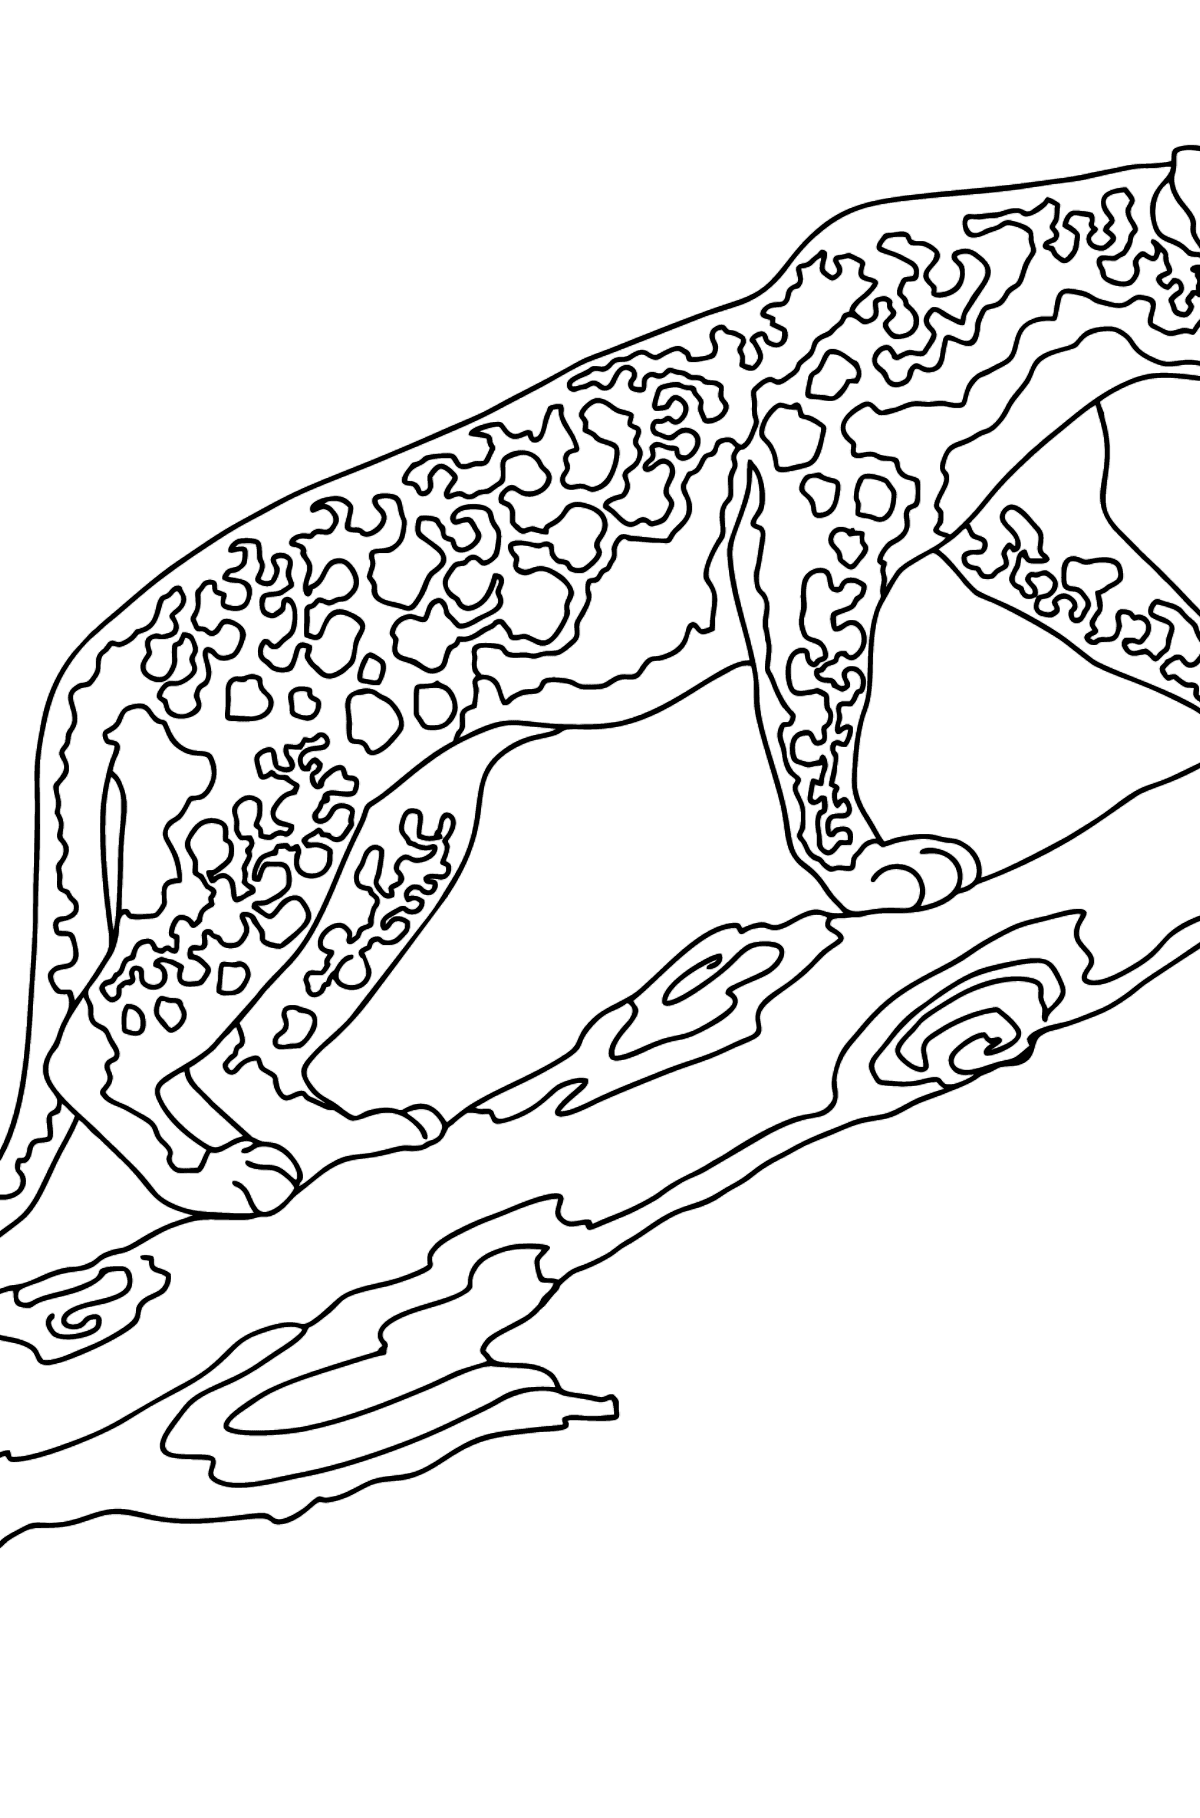 Desenho de lindo leopardo para colorir (difícil) - Imagens para Colorir para Crianças